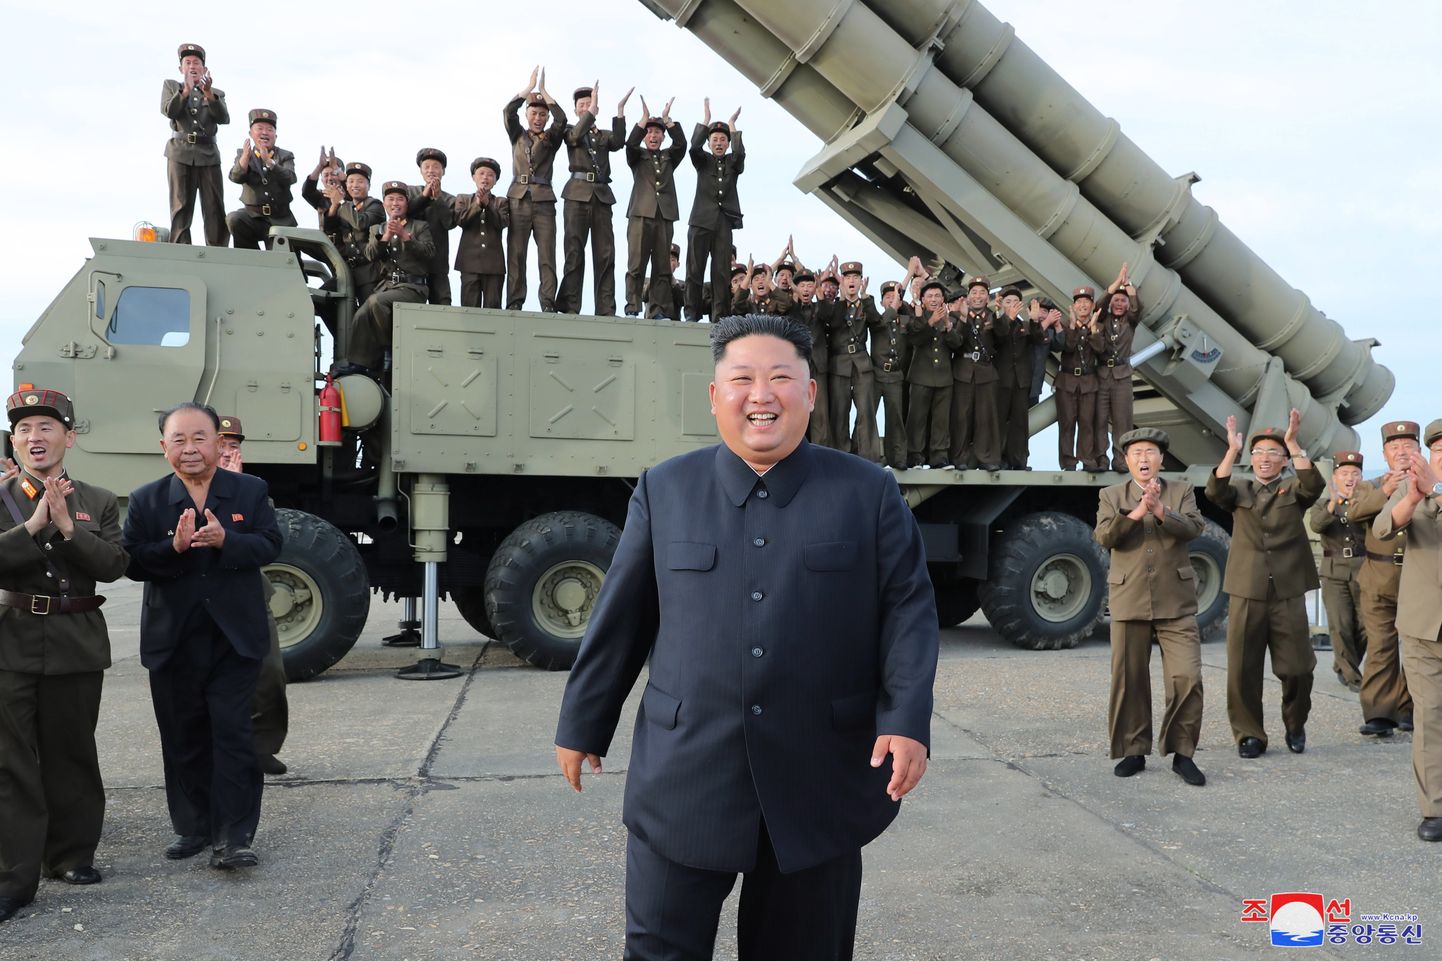 Põhja-Korea juht Kim Jong-un uue raketisüsteemi ees.